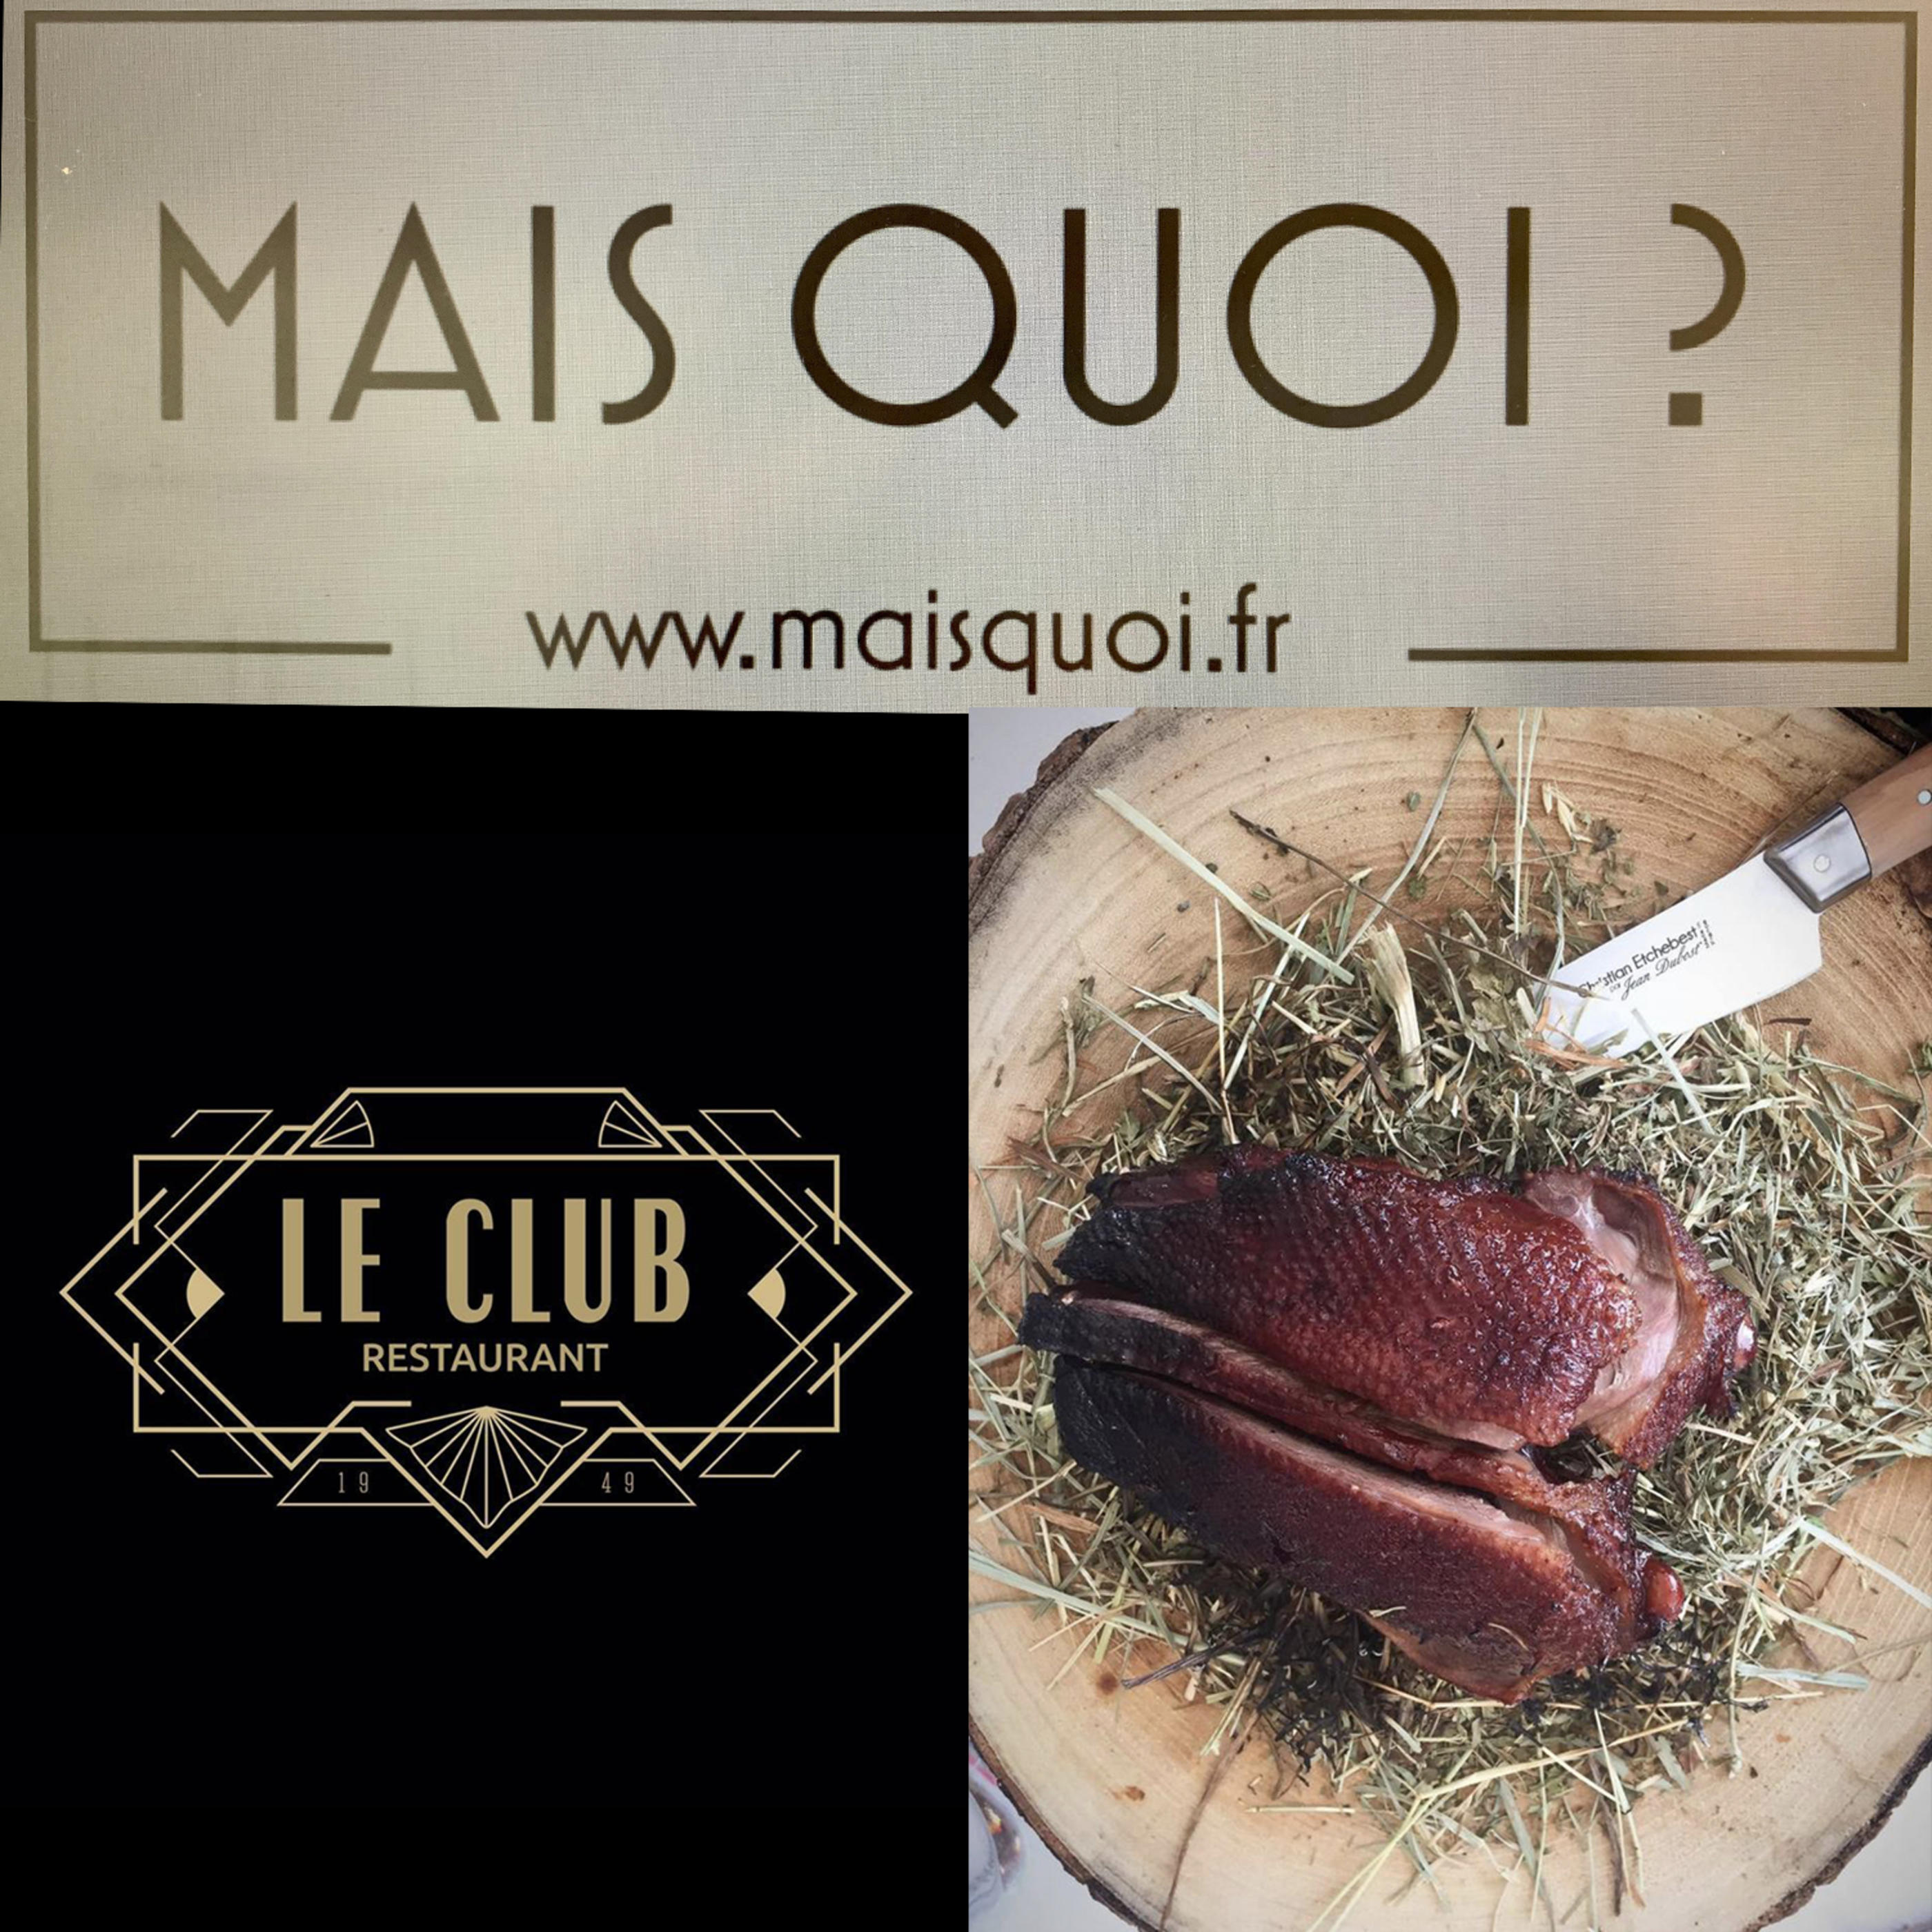 Couteau_Jean_Dubost_restaurant_le_club_Paris_maisquoi